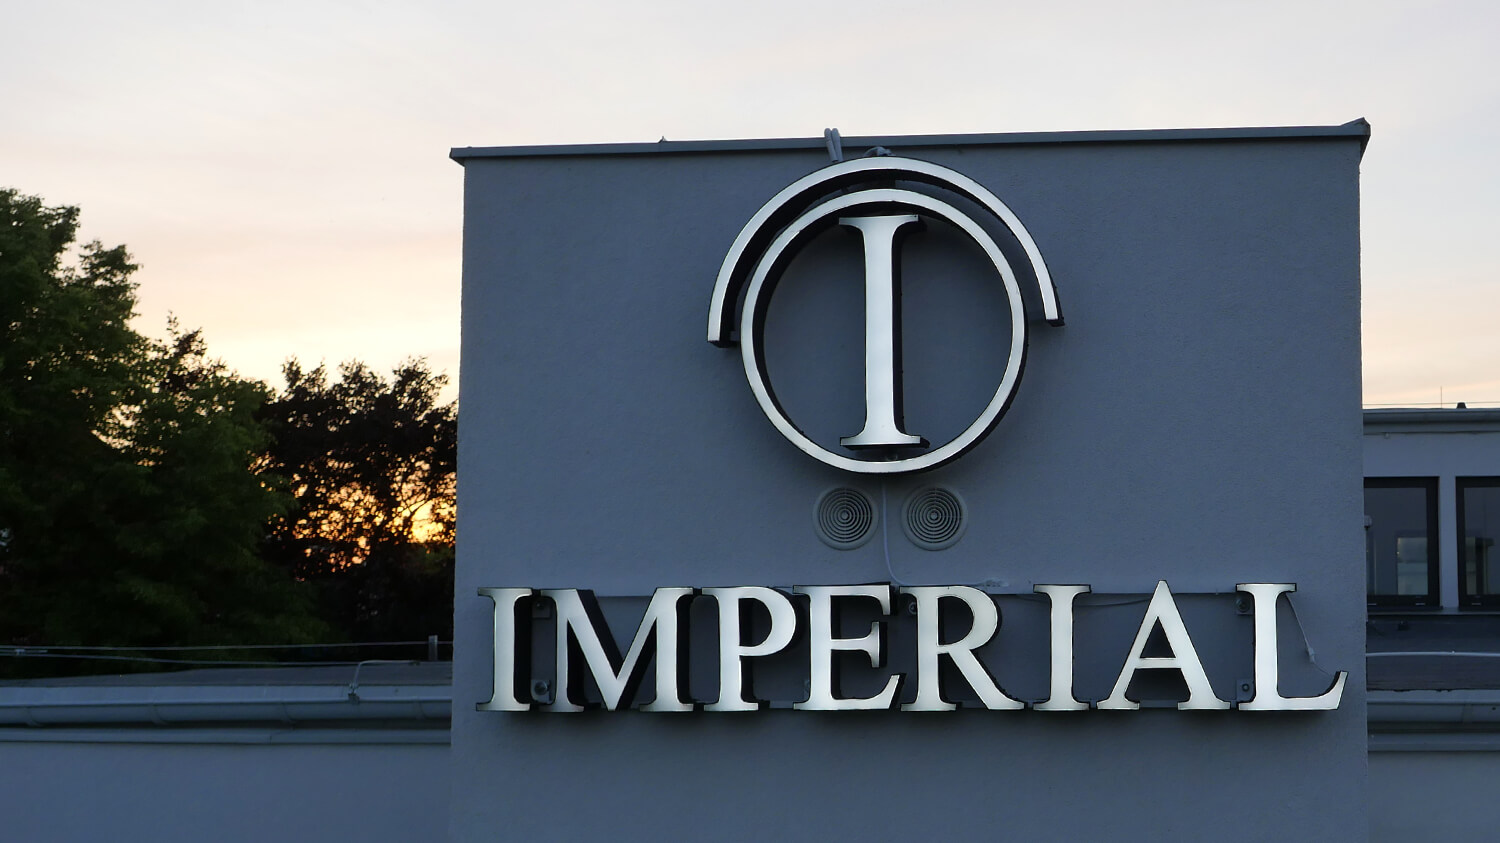 Imperial - Imperial Hotel - scritte spaziali a LED sul muro